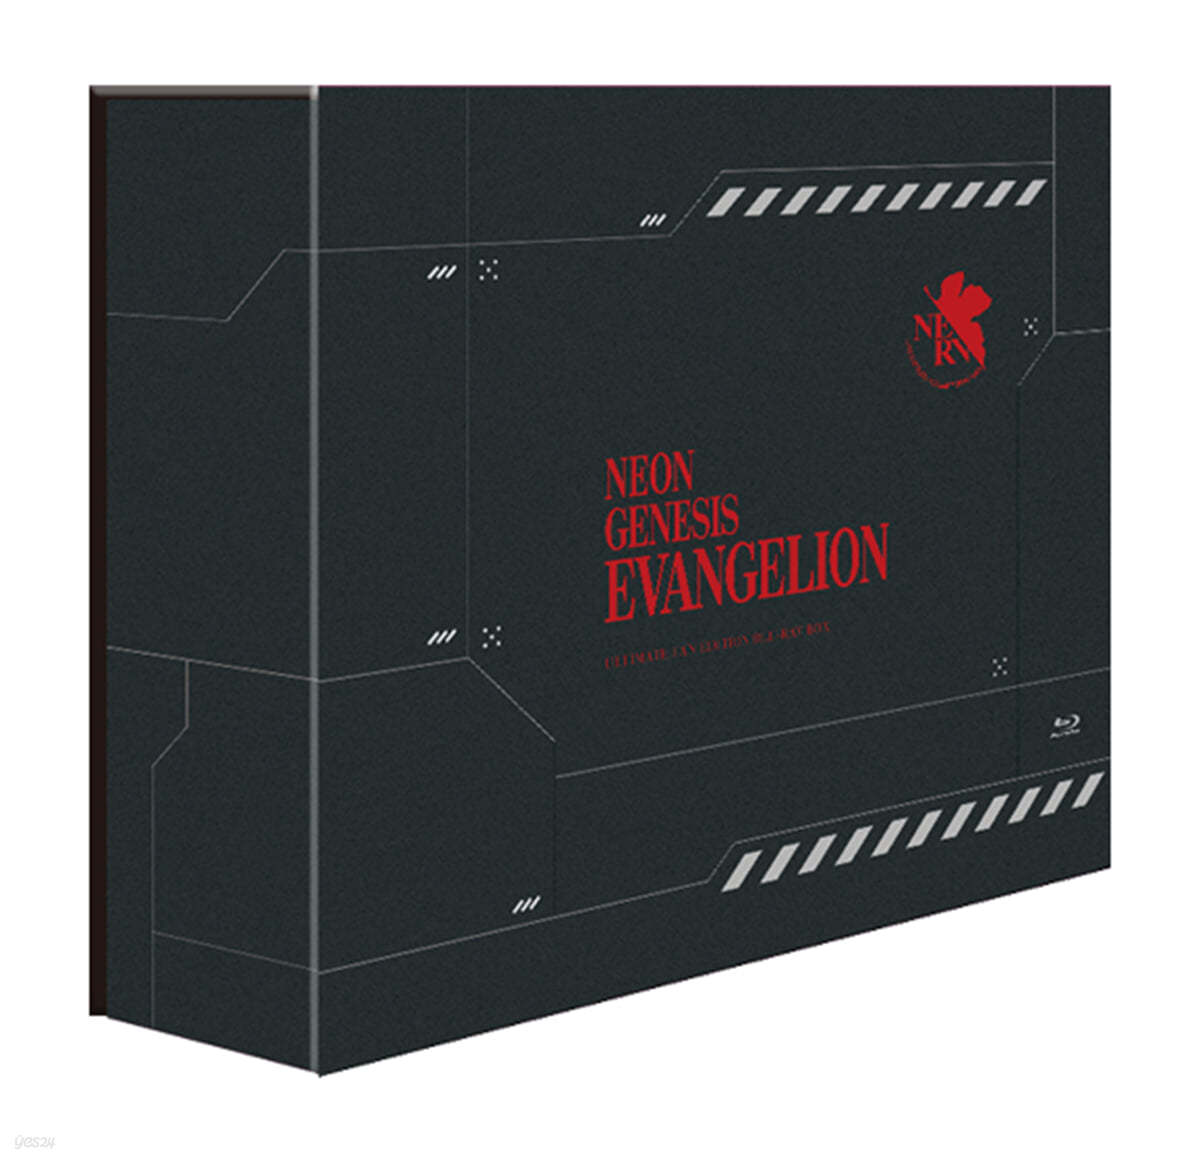 신세기 에반게리온 TV시리즈 + 극장판 Evangelion:Death (True)² + 극장판 The End Of Evangelion + 우리말 녹음포함 얼티밋 팬 에디션(19th ULTIMATE FAN EDITION, 9Disc) : 블루레이